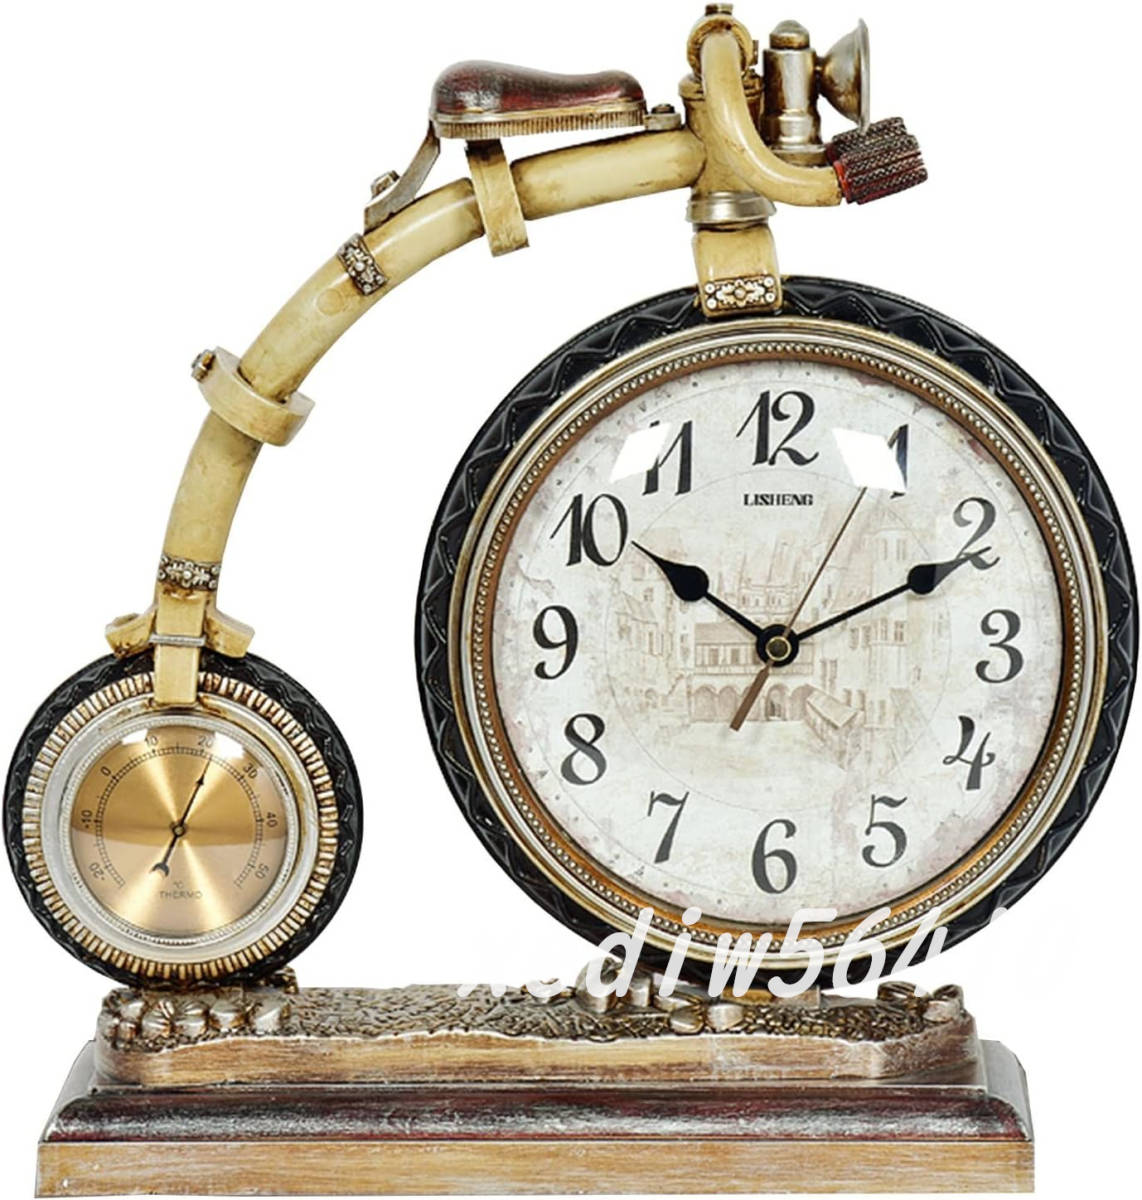 ヨーロピアンスタイル レトロ クリエイティブな卓上時計 温度ダイヤル付き 家の装飾 おしゃれ インテリア 置時計